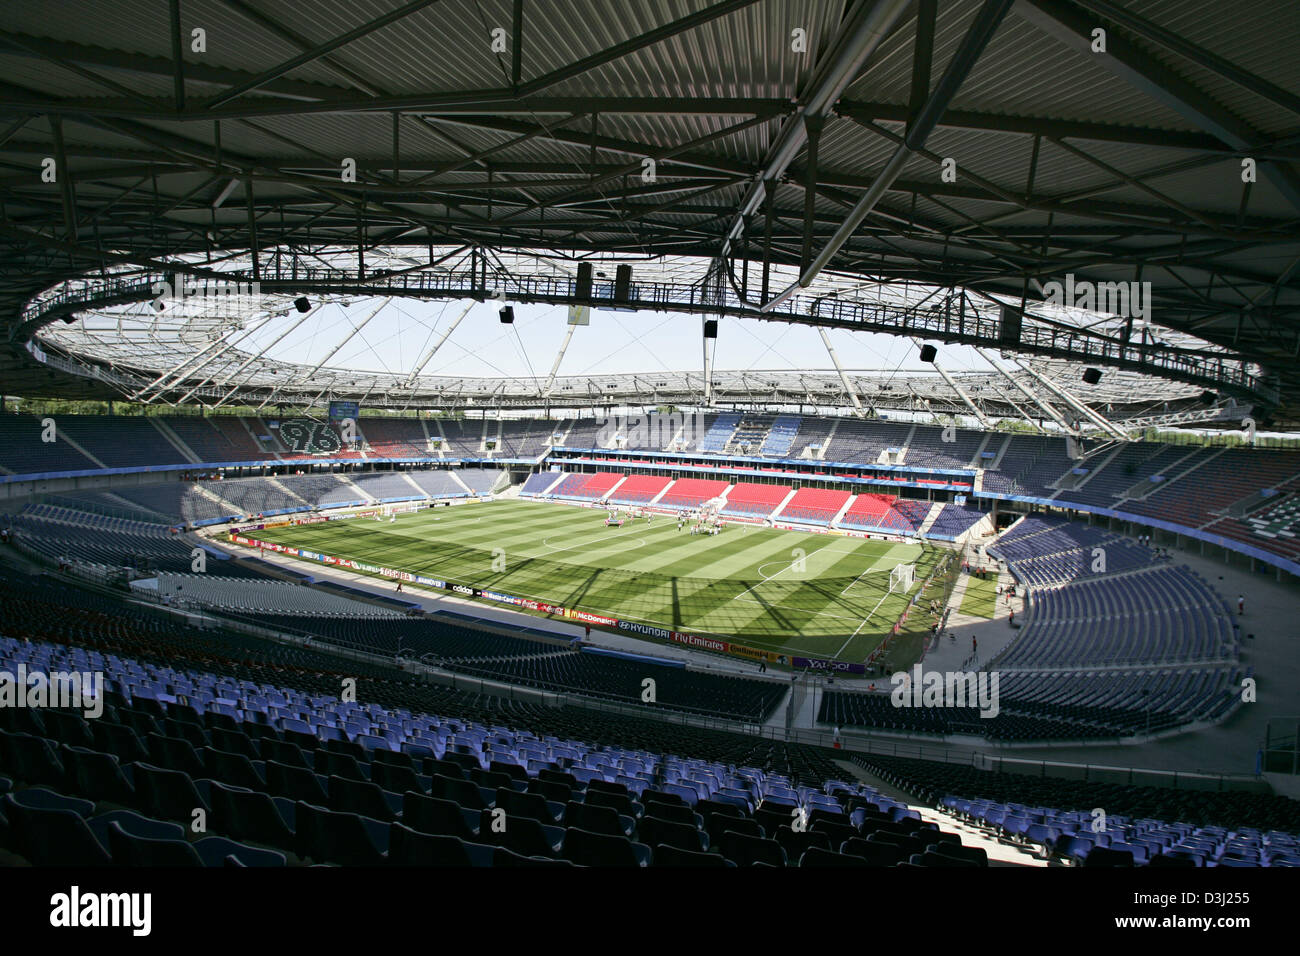 (Dpa) - Blick in der FIFA-Konföderationen-Pokal Wettbewerb Ort AWD-Arena in Hannover, 19. Juni 2005. Die "Niedersachsenstadion" wurde 1954 erbaut und verwandelte sich in ein reines Fußballstadion für 63 Millionen Euro. Es bietet Platz für 39.300 Zuschauer und gehört zu den Orten der Wettbewerb von der FIFA WM 2006. Stockfoto